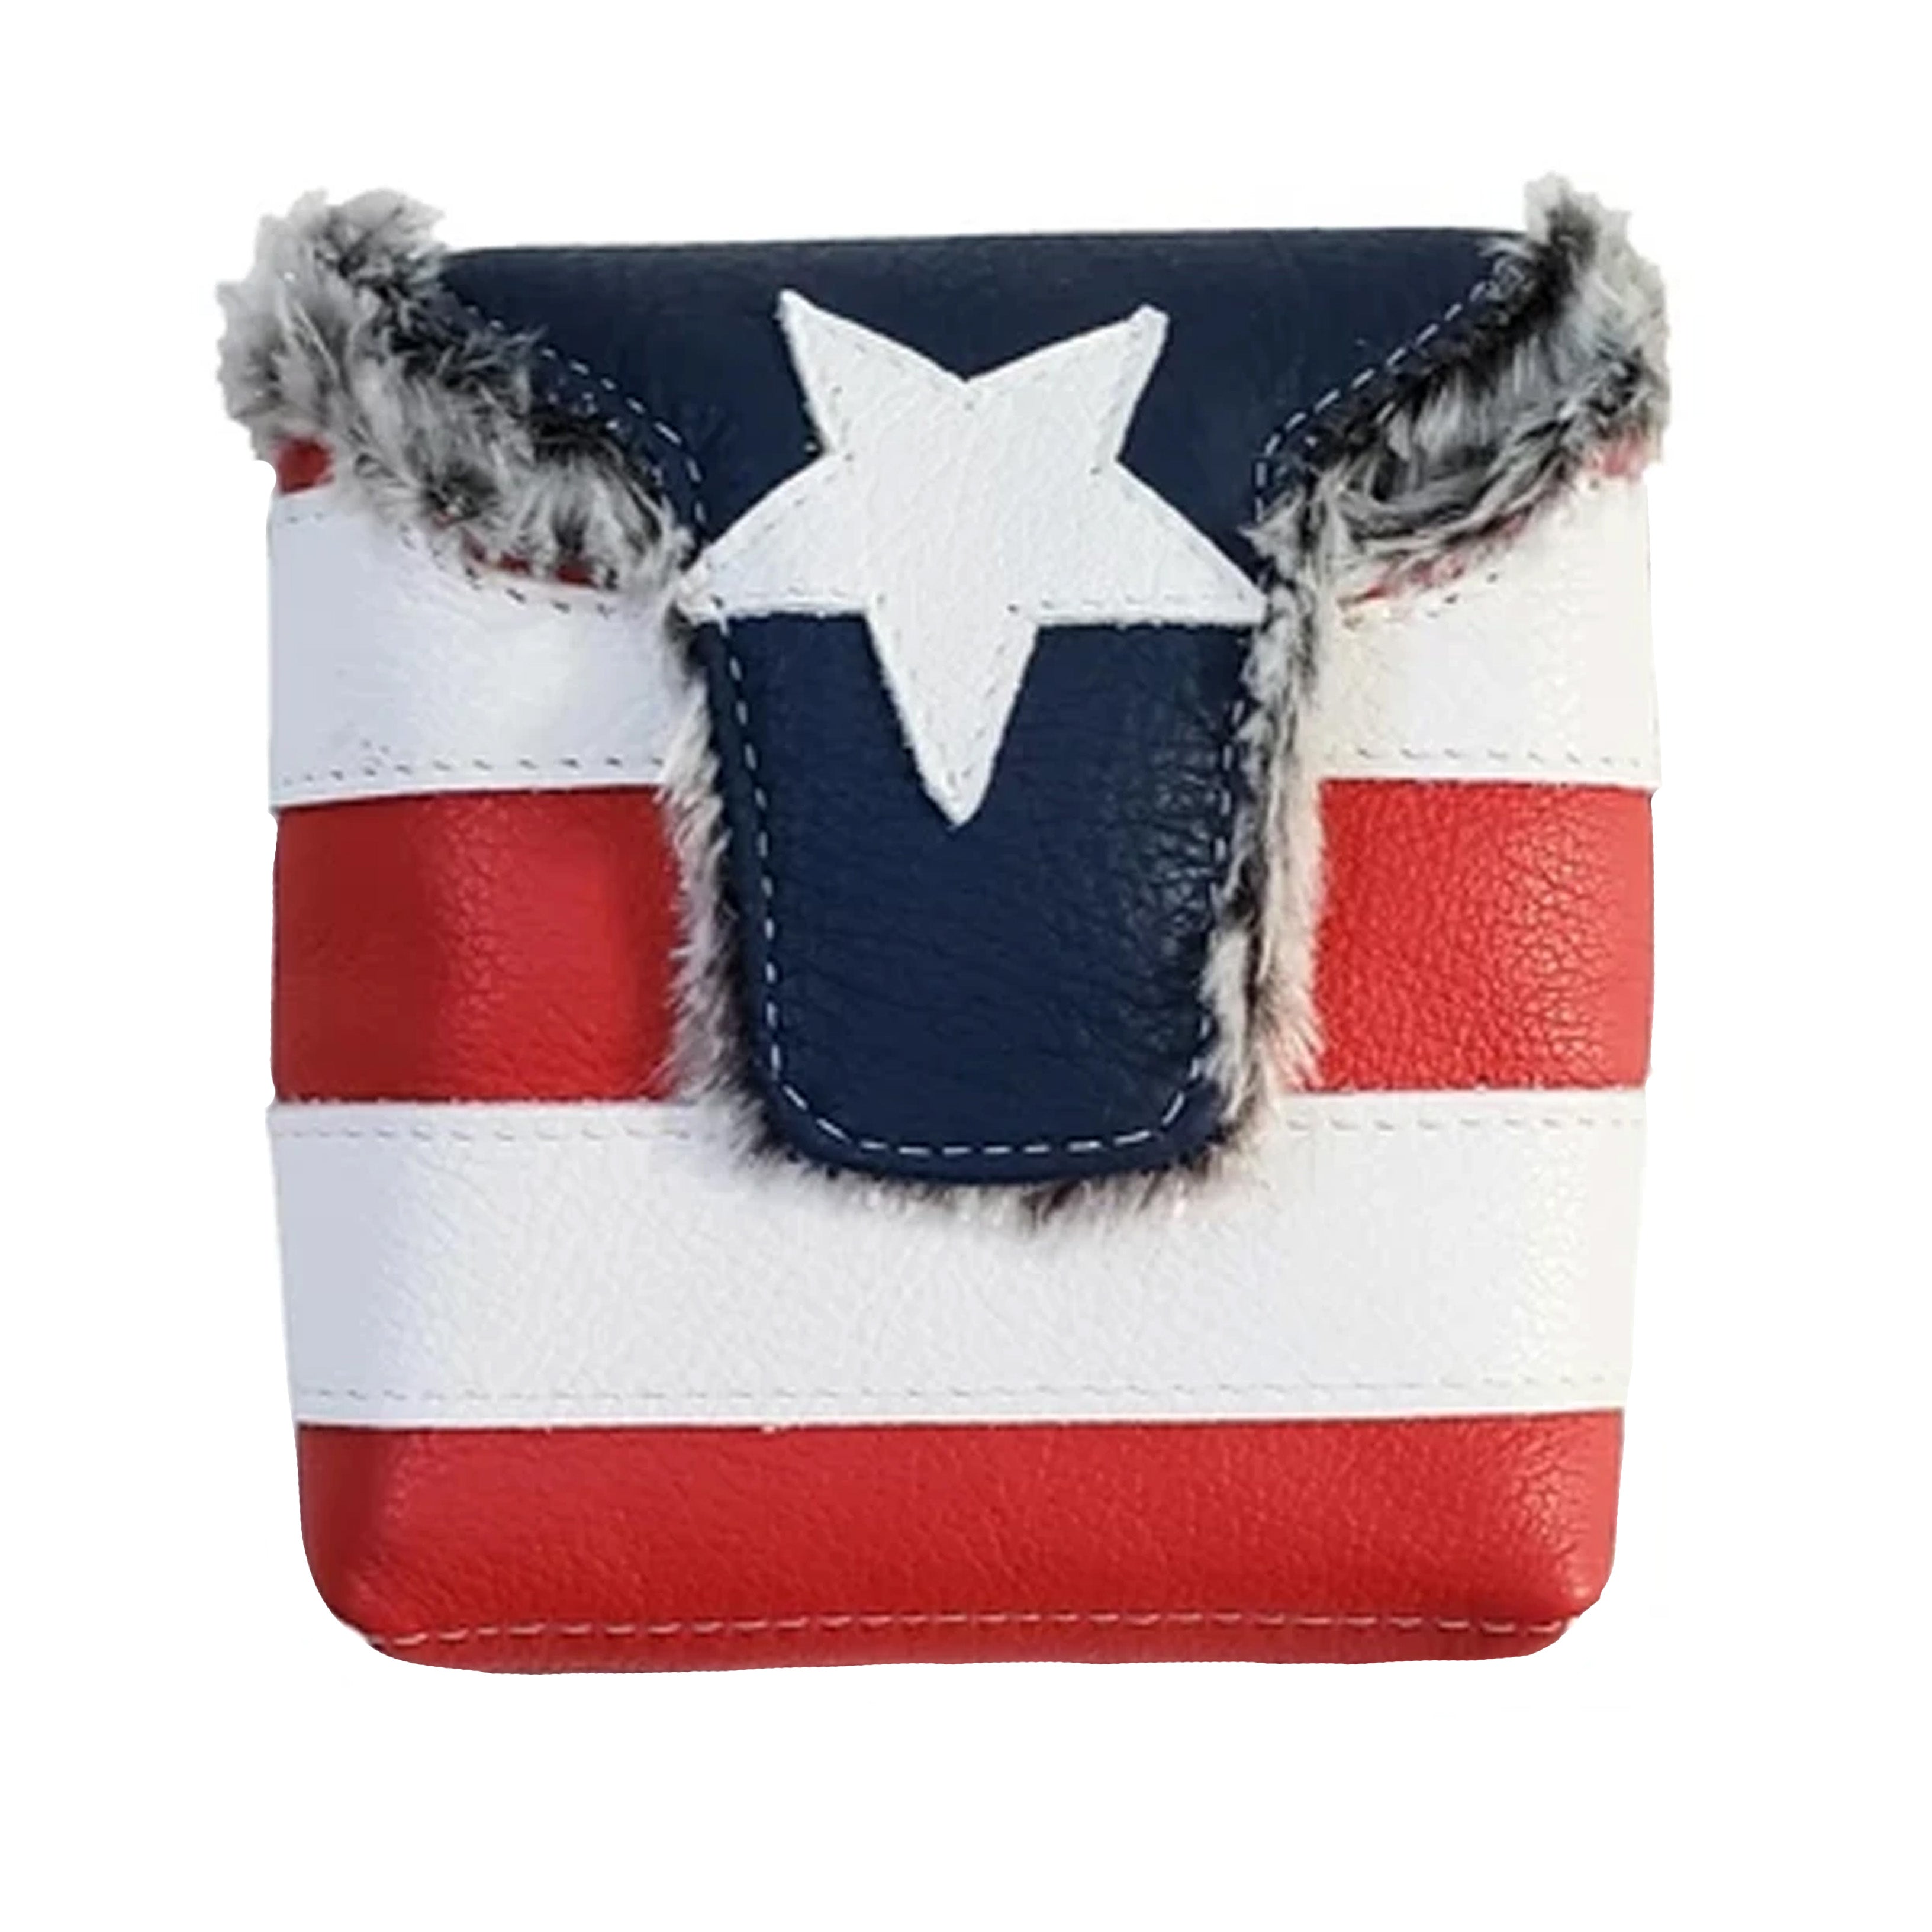 NEW! The USA FLAG Putter Headcover - Robert Mark Golf